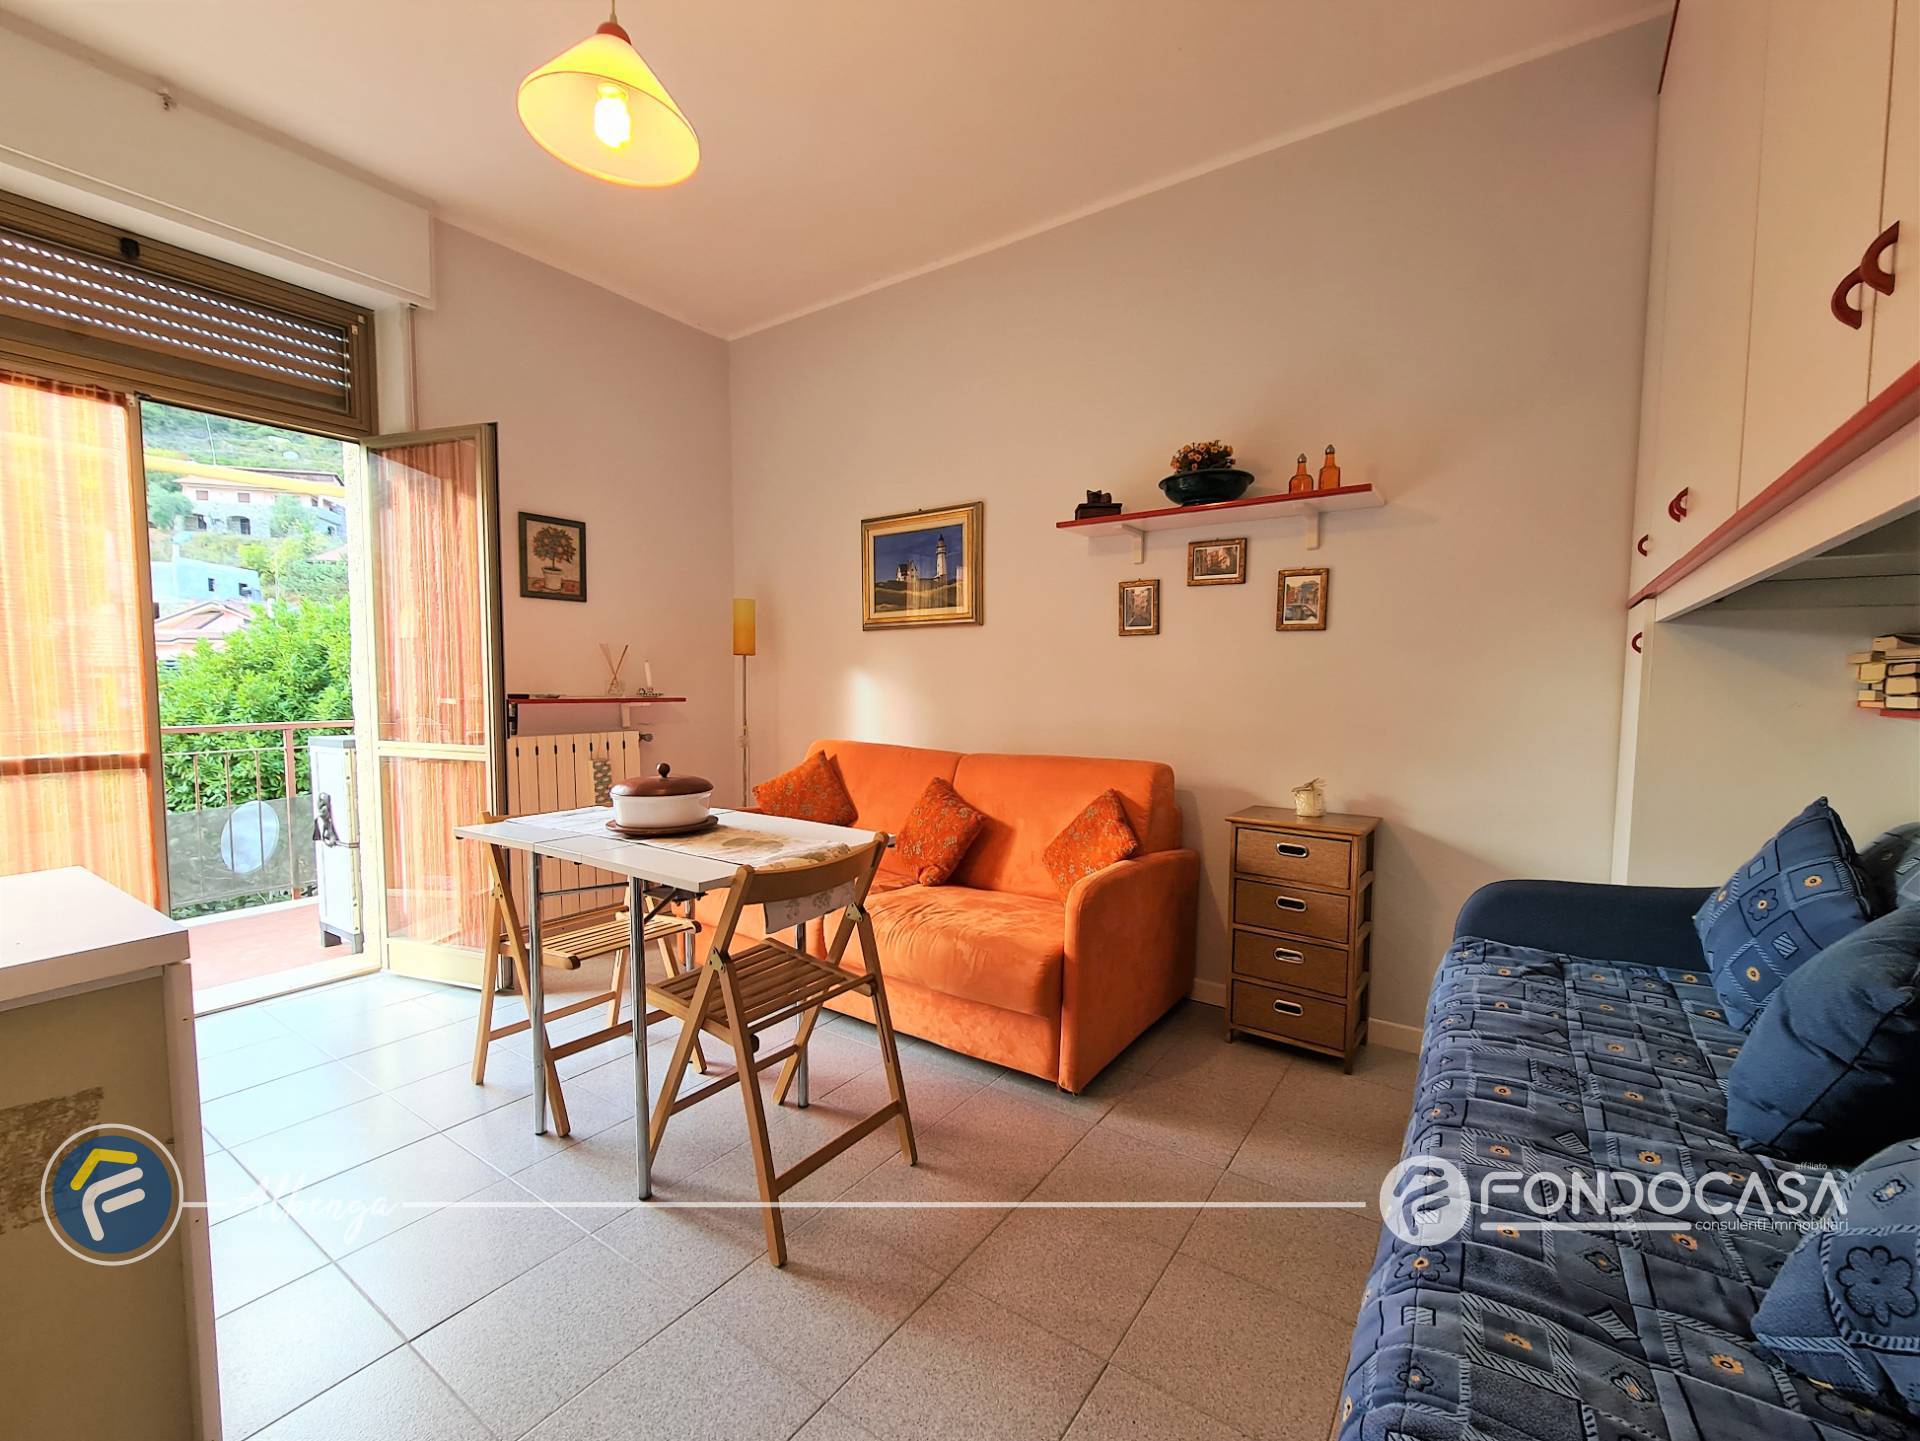 Appartamento in vendita a Ortovero, 1 locali, prezzo € 45.000 | CambioCasa.it